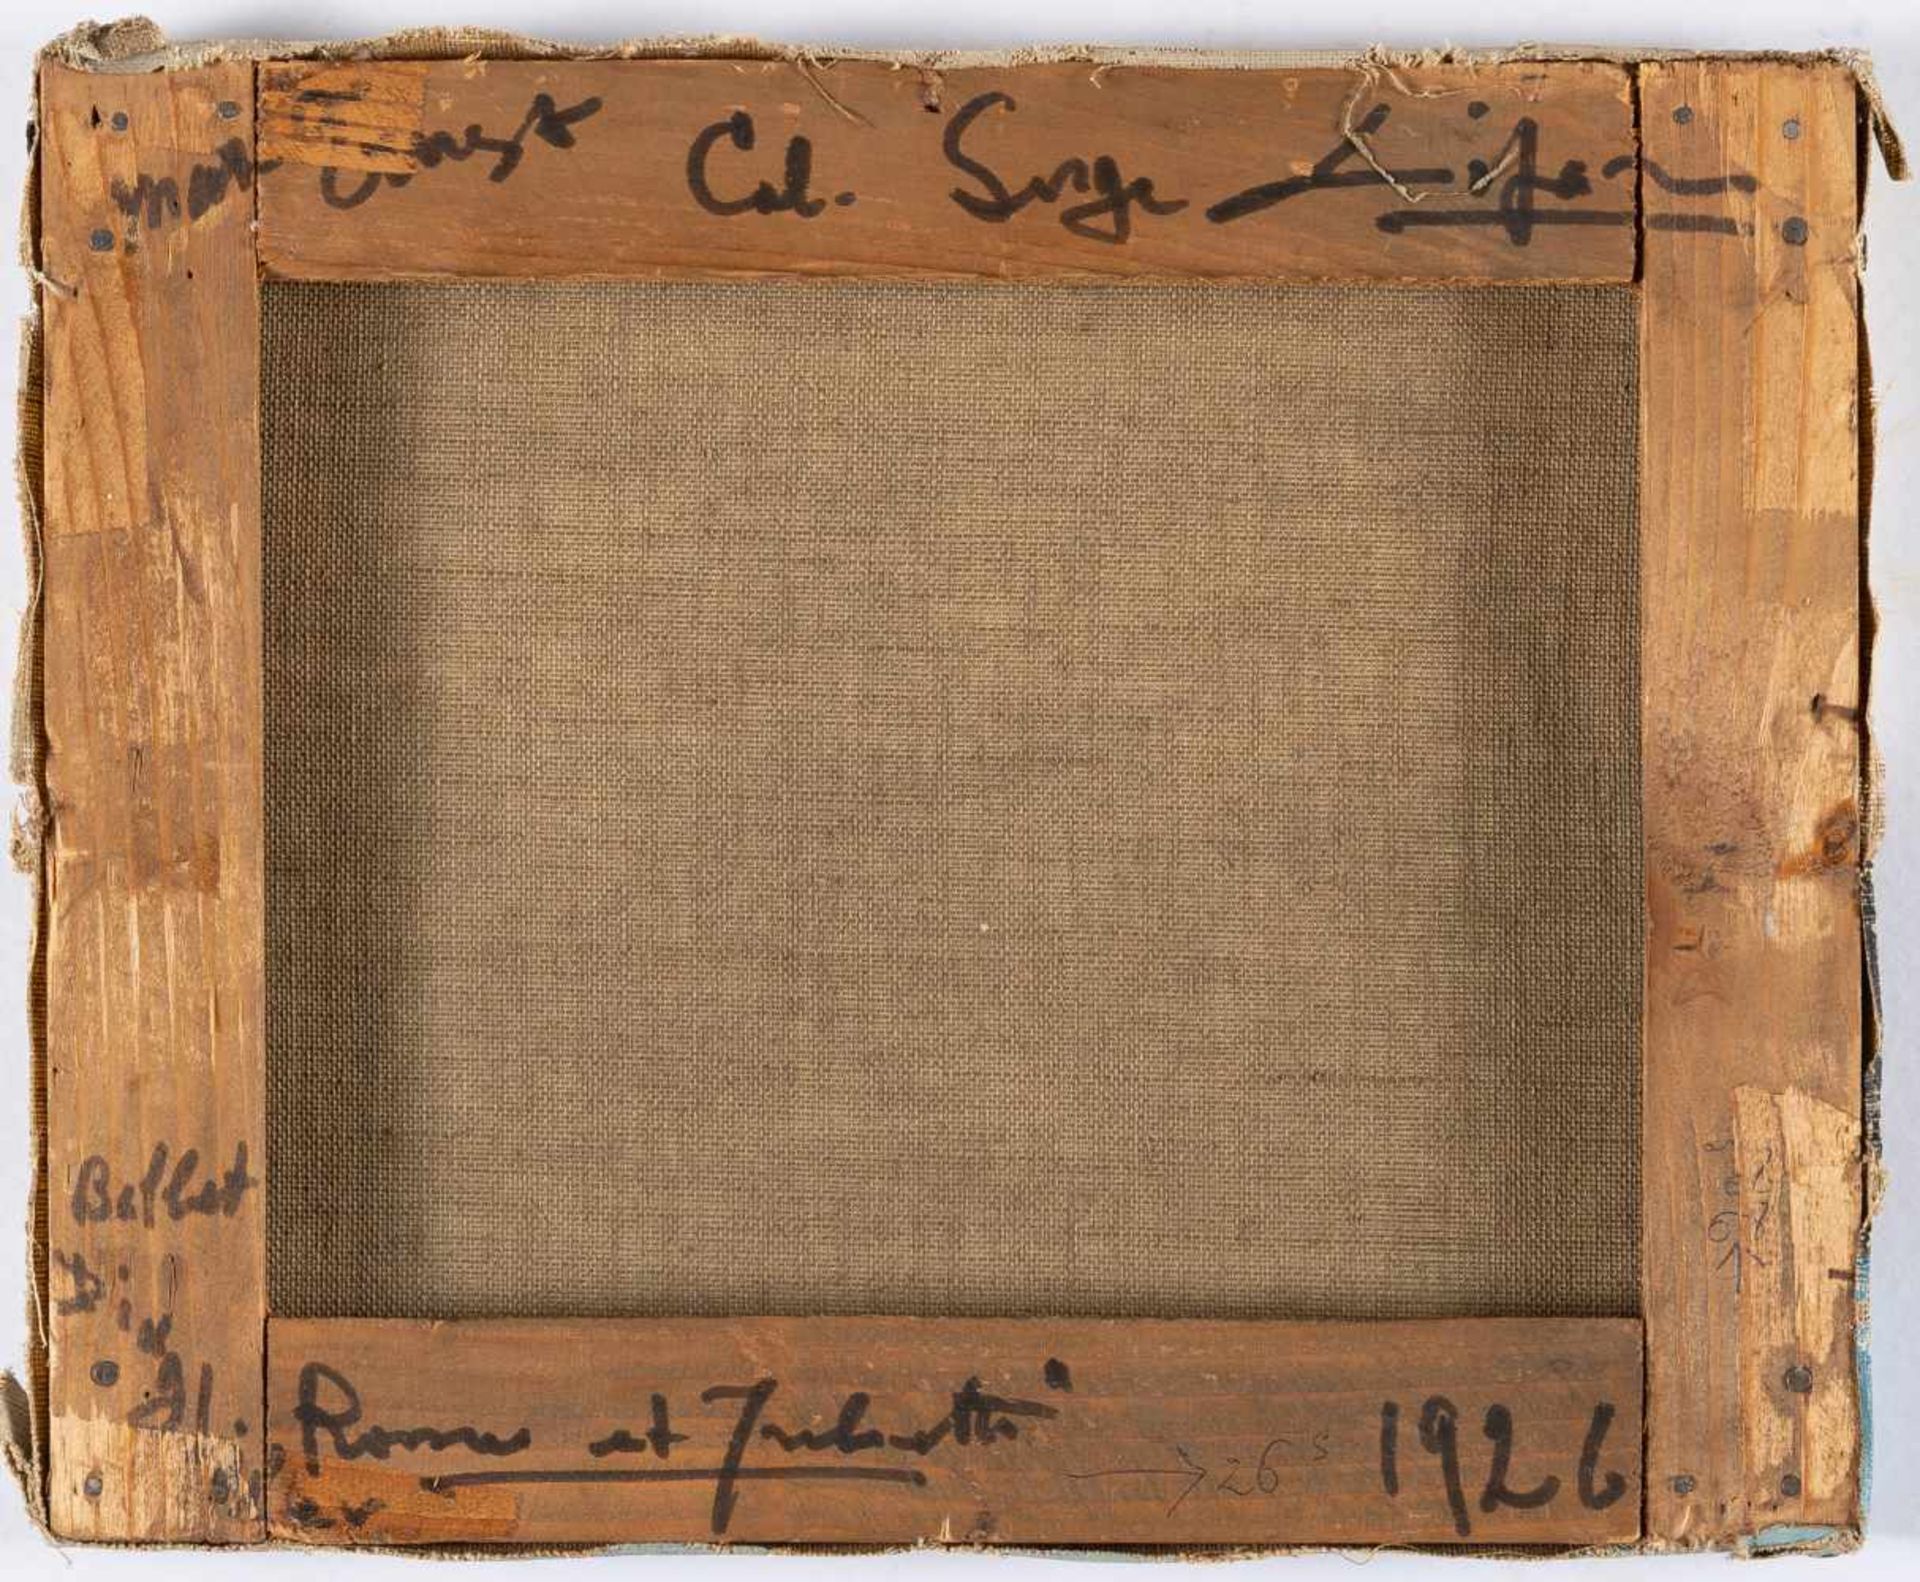 Max ErnstHorizonÖl auf Leinwand. (1926). Ca. 22 x 27 cm. Signiert unten rechts. In Künstler - Bild 3 aus 4